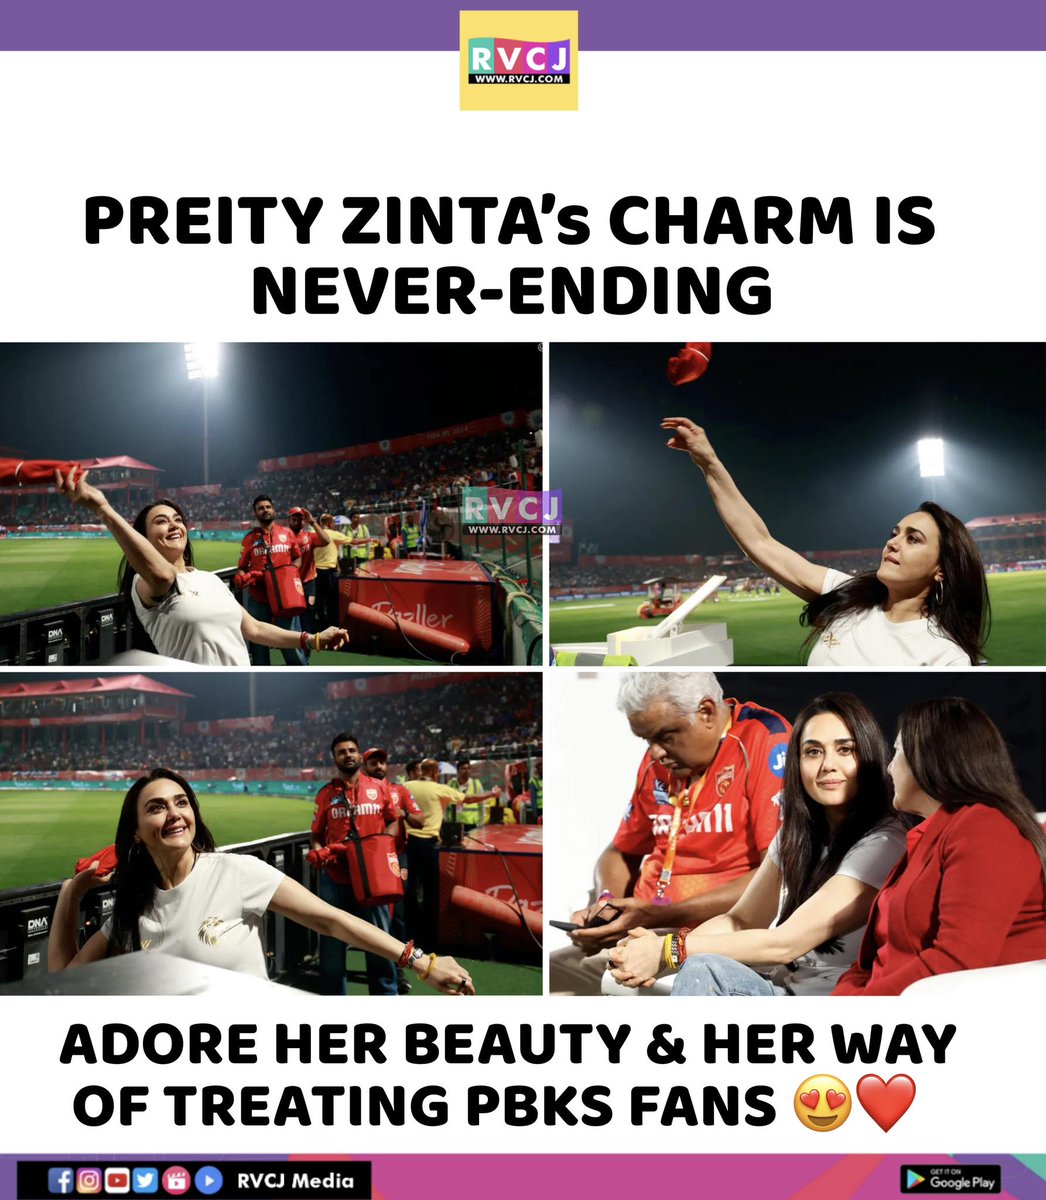 Preity Zinta
#preity_zinta